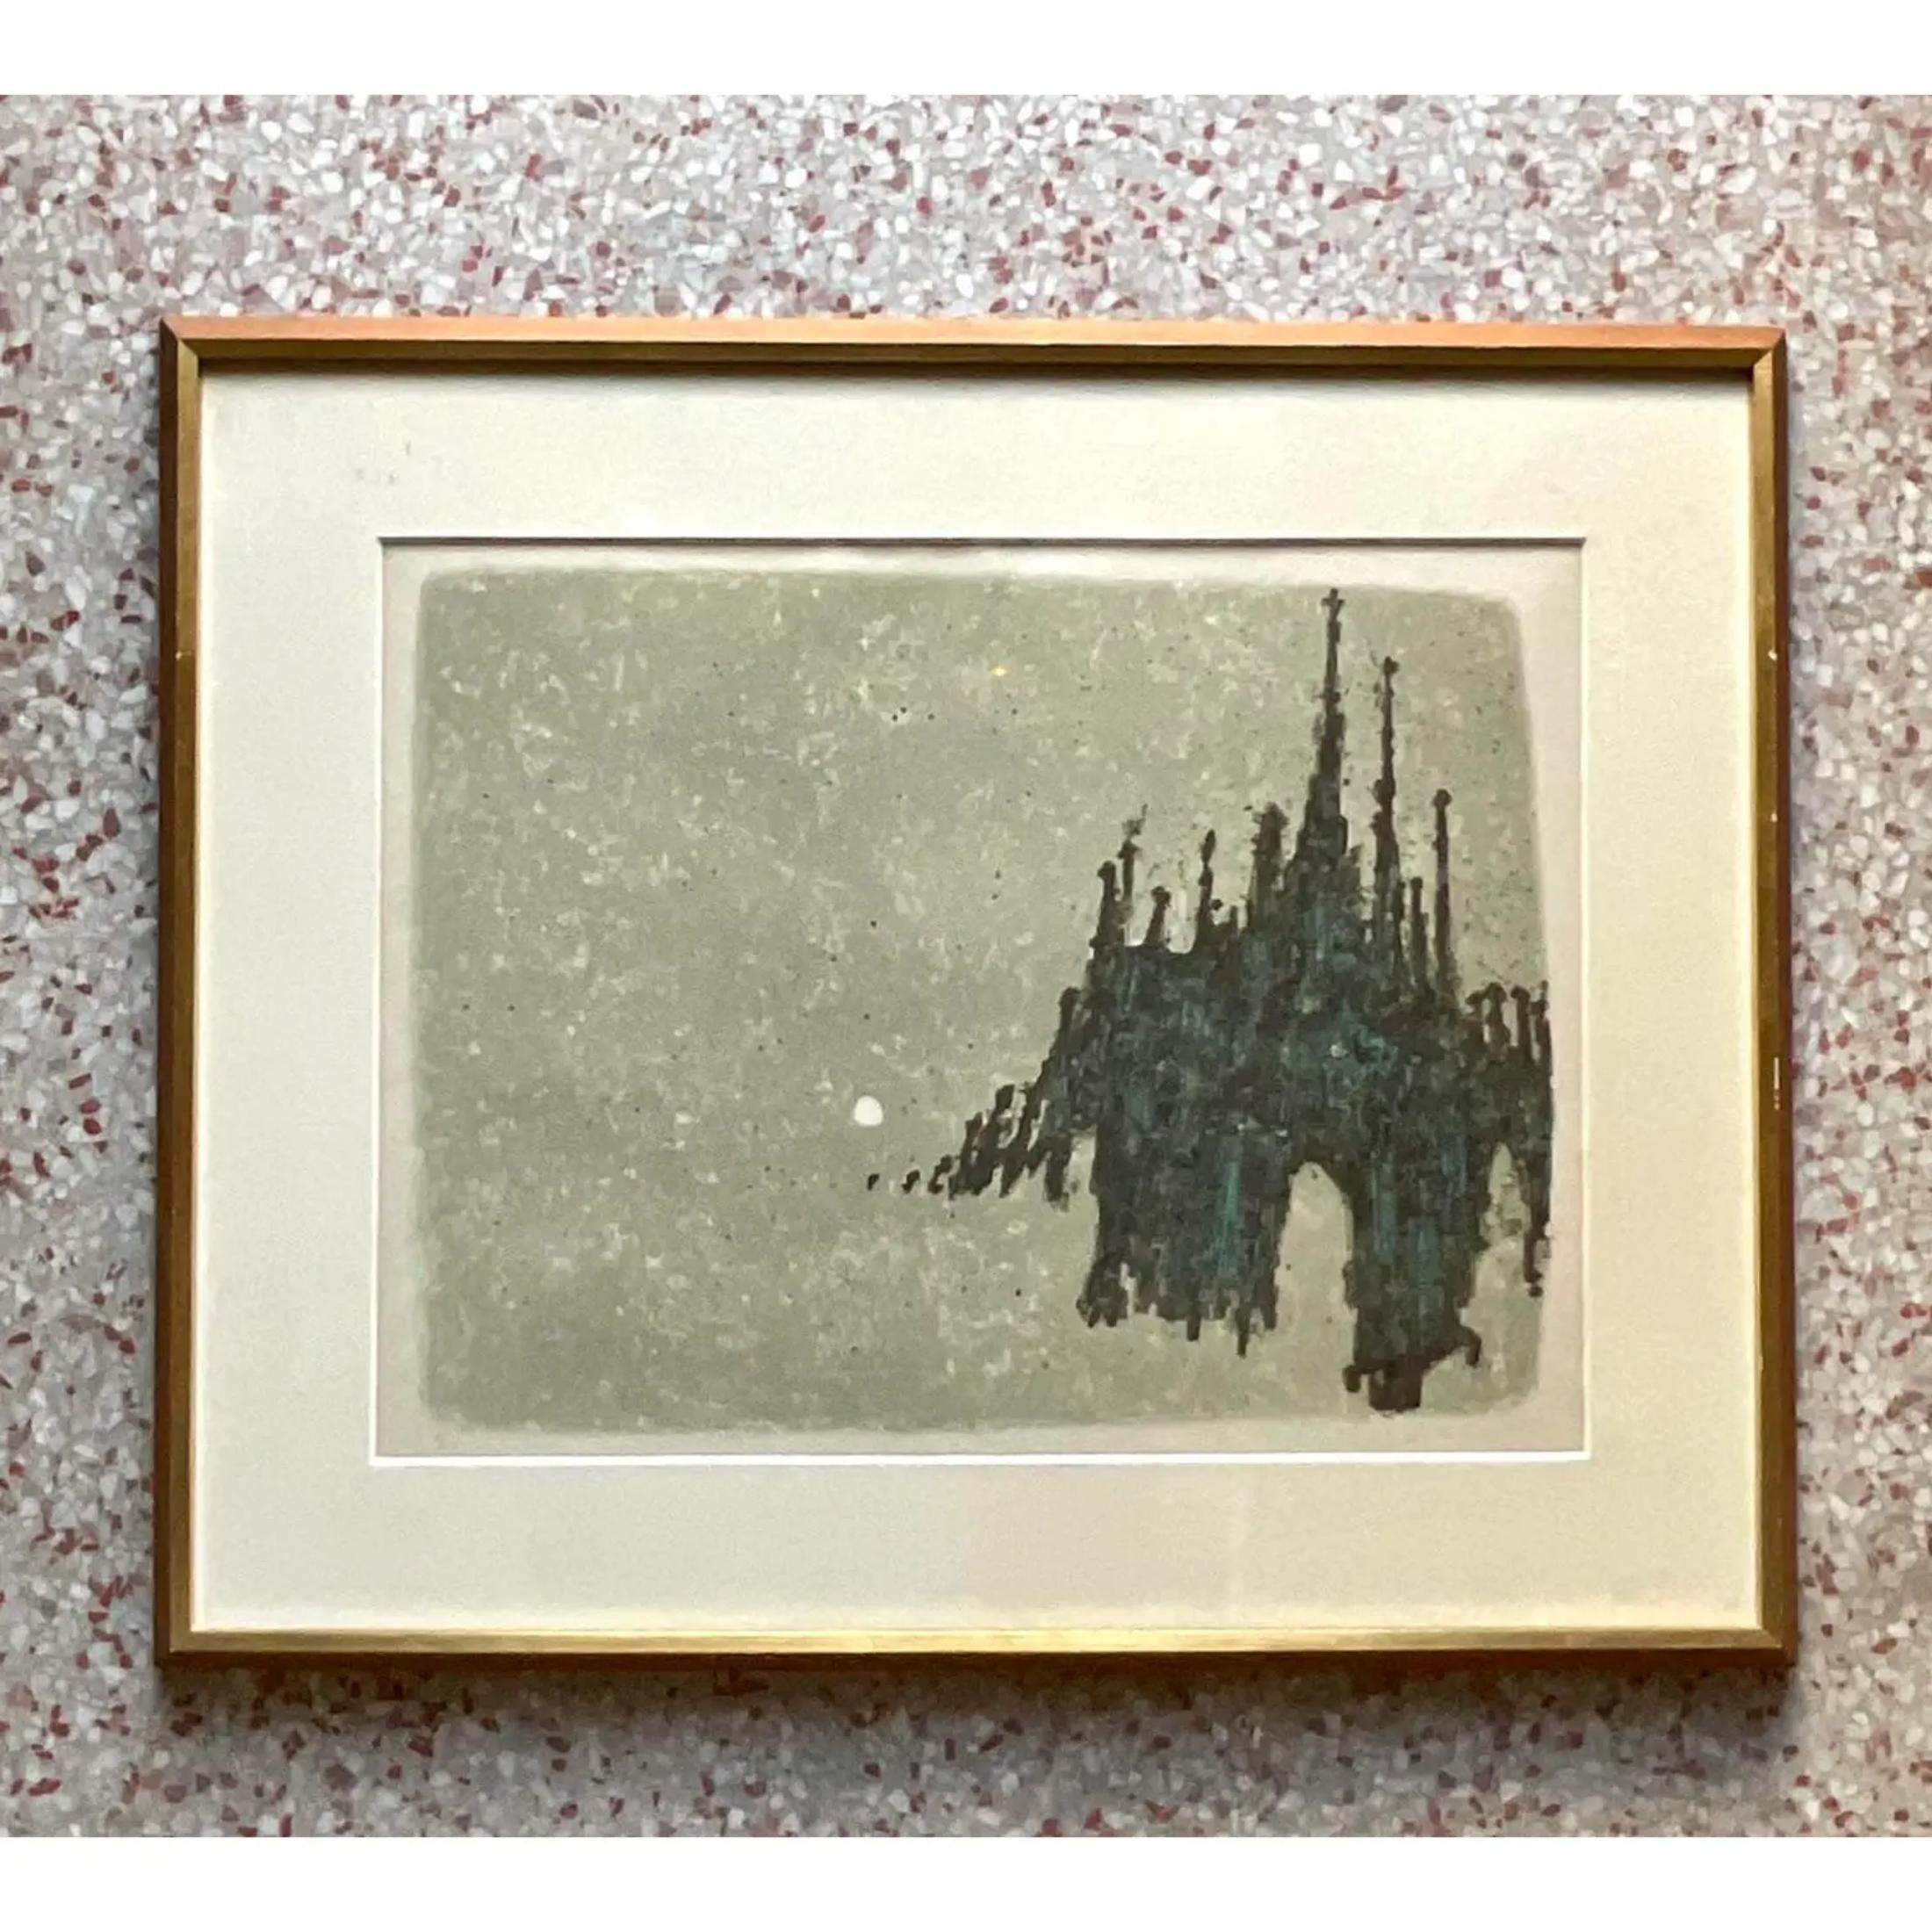 Eine fantastische Vintage Boho original signierte Lithographie. Eine schicke abstrakte Skyline mit Lichtblitzen. Signiert vom Künstler. Erworben aus einem Nachlass in Palm Beach